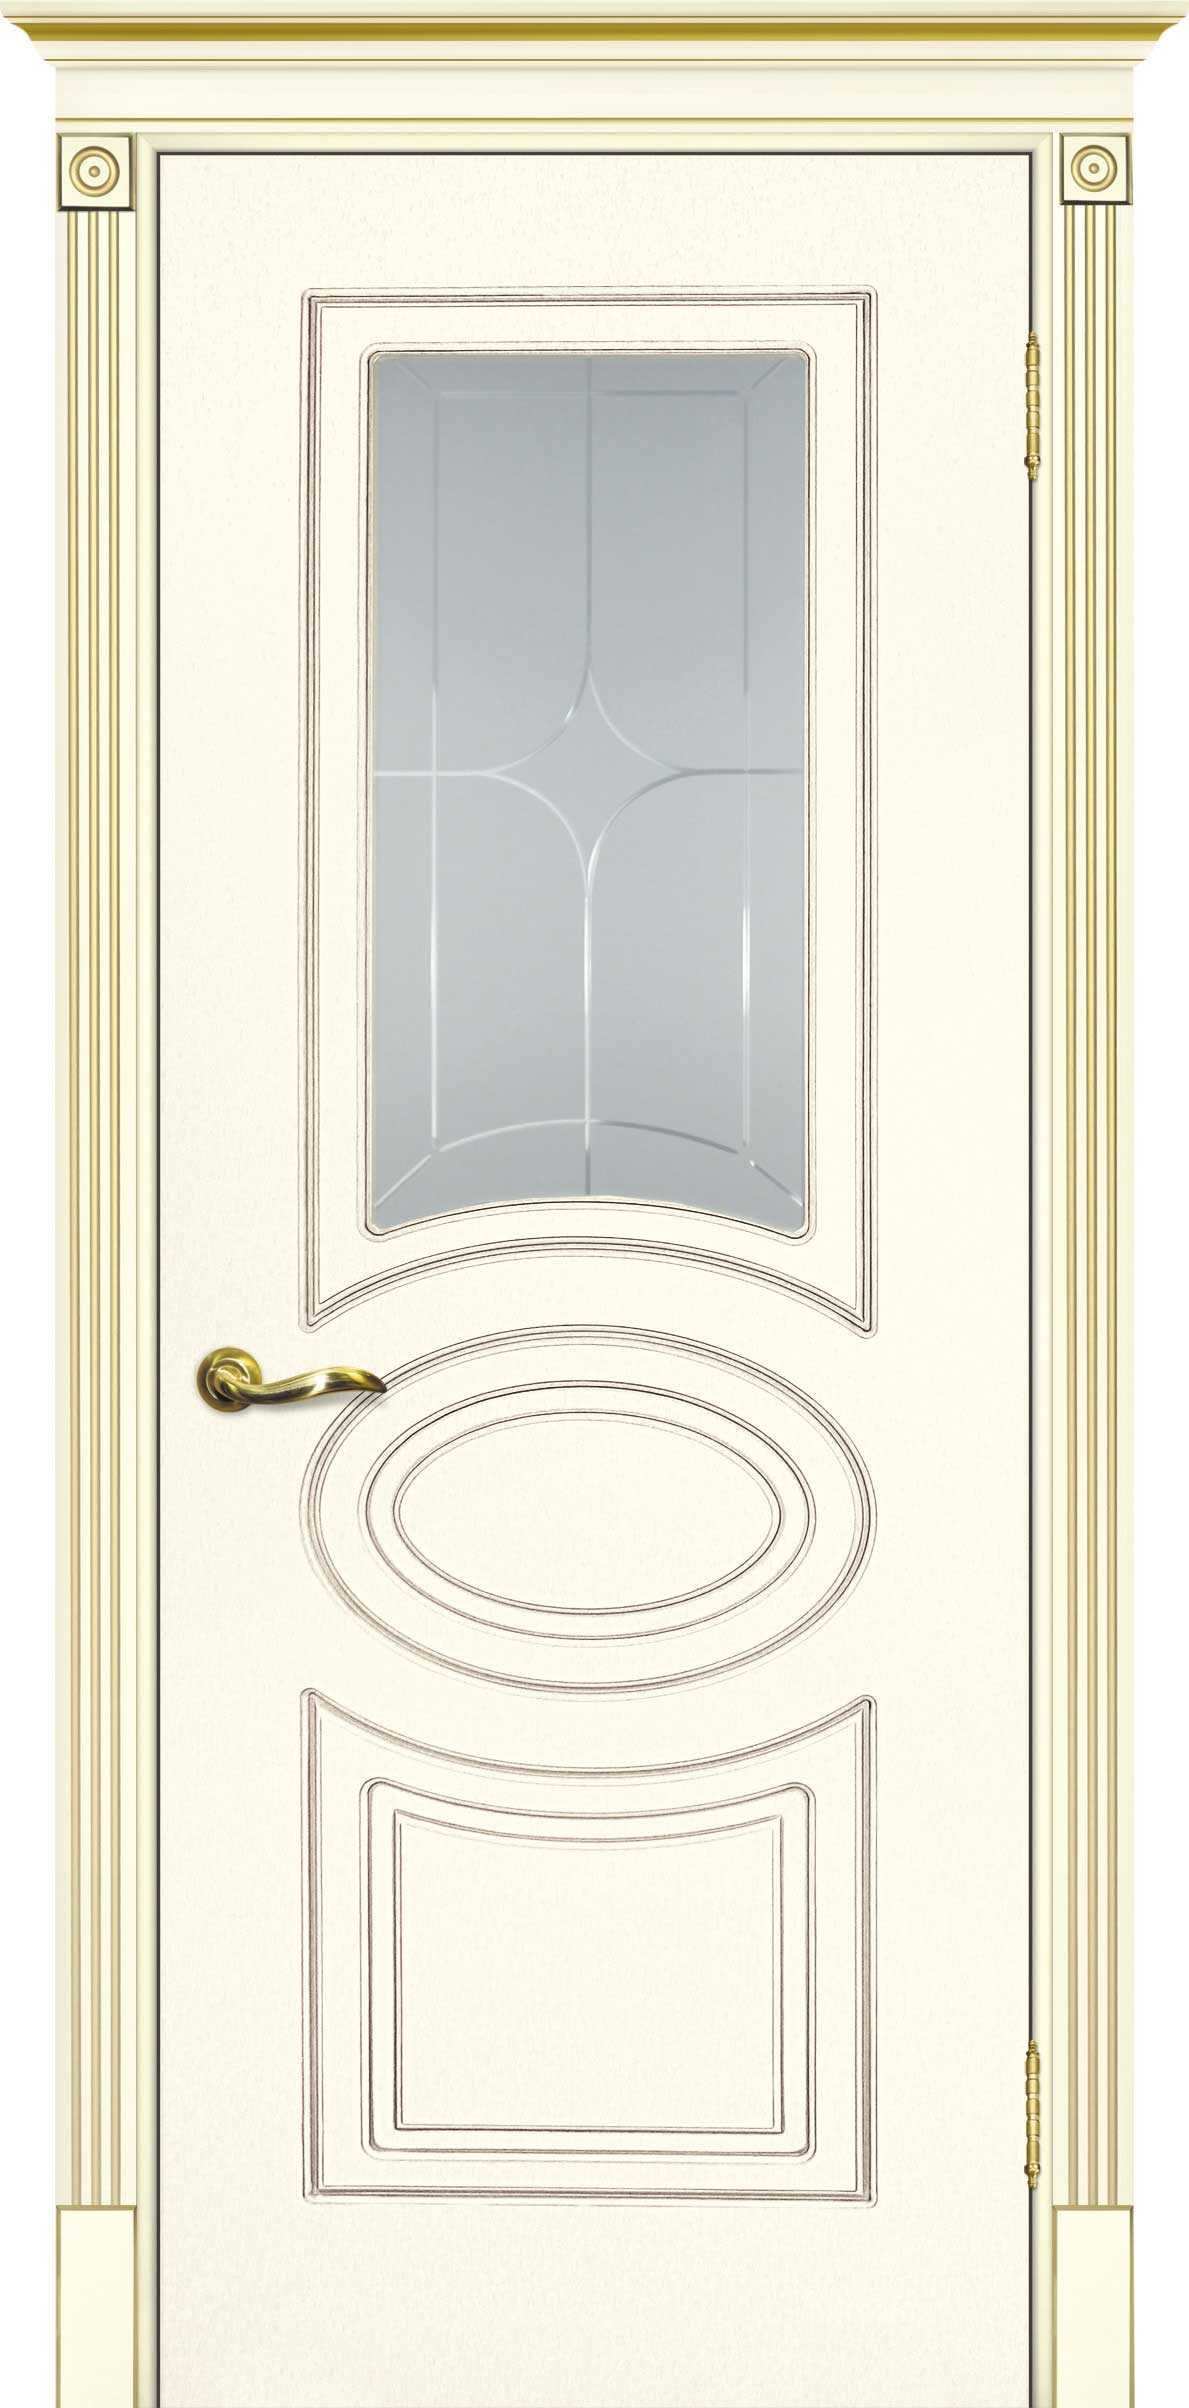 Двери крашеные (Эмаль) ТЕКОНА Смальта 03 со стеклом Слоновая кость ral 1013 патина золото размер 200 х 60 см. артикул F0000052602